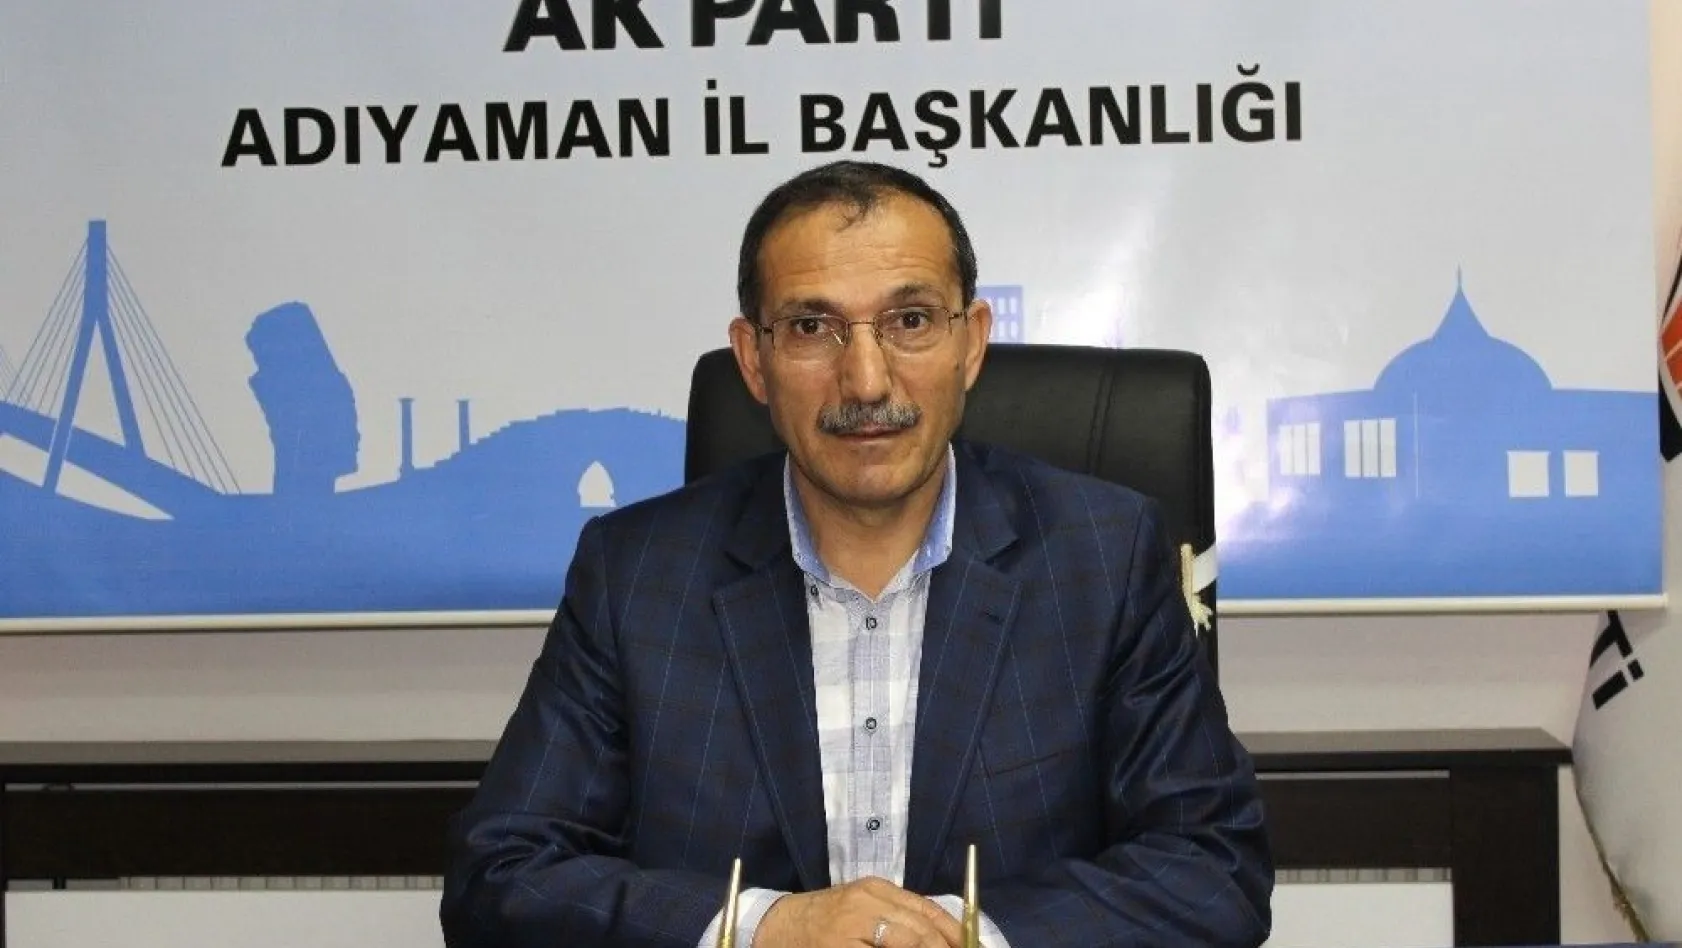 Mehmet Dağtekin AK Parti İl başkanlığına atandı
